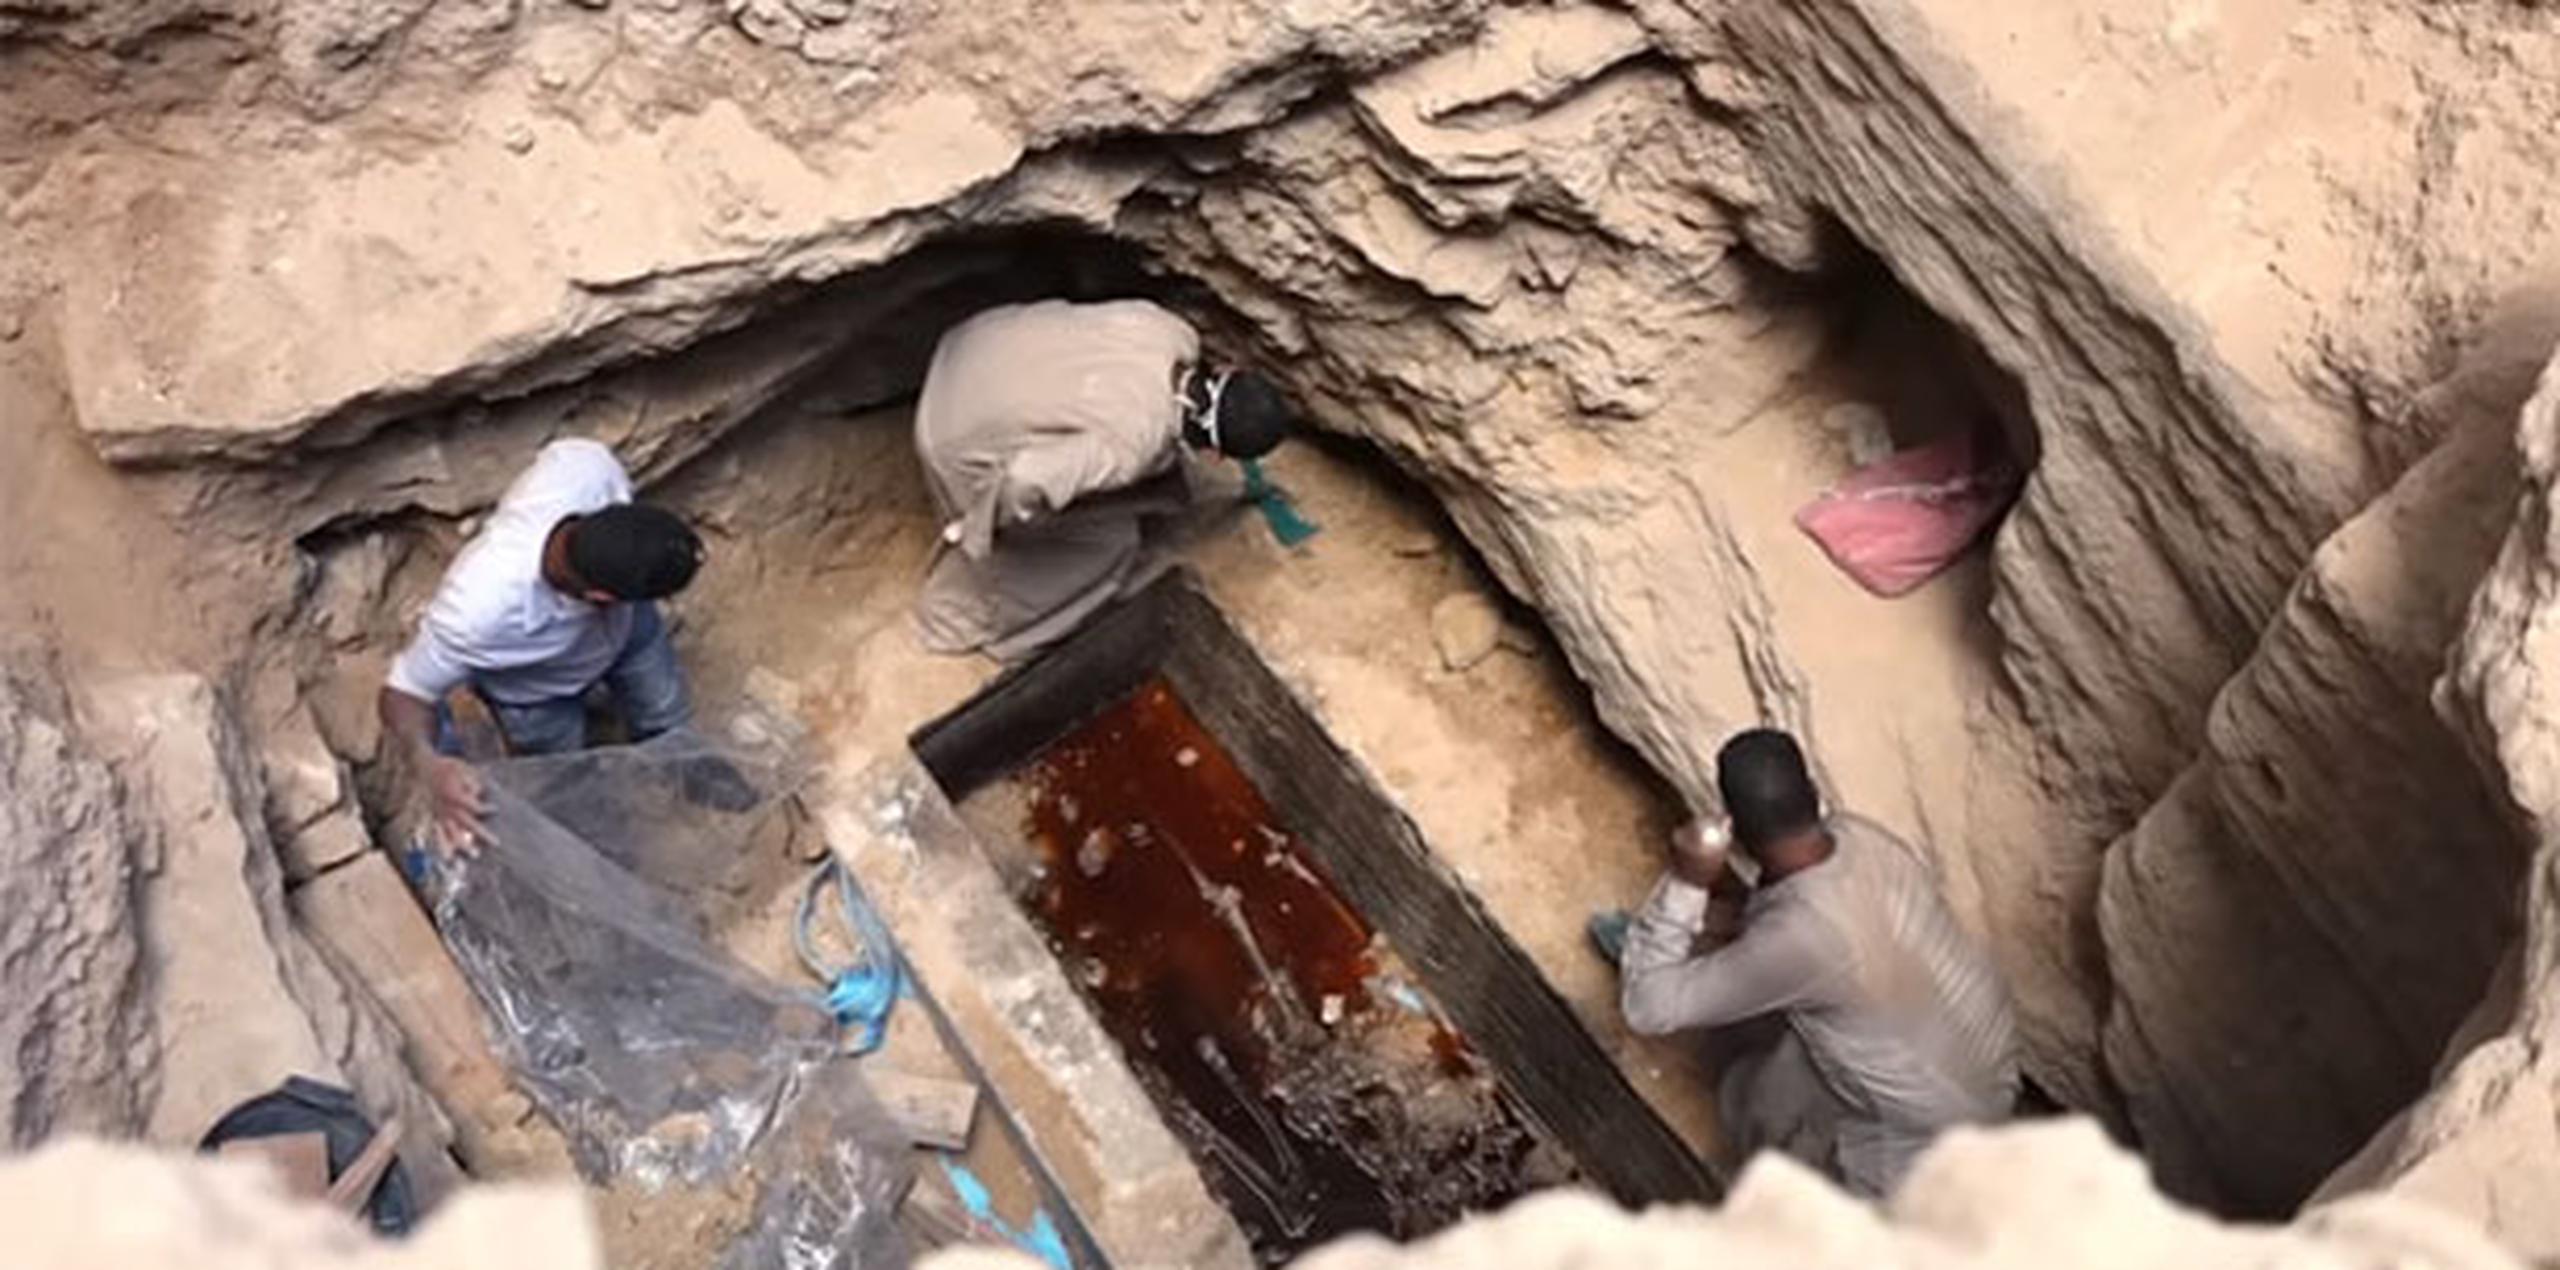 El sarcófago de 2,000 años de antigüedad, que estaba lleno de líquido rojo, causó revuelo en redes sociales. (Captura)